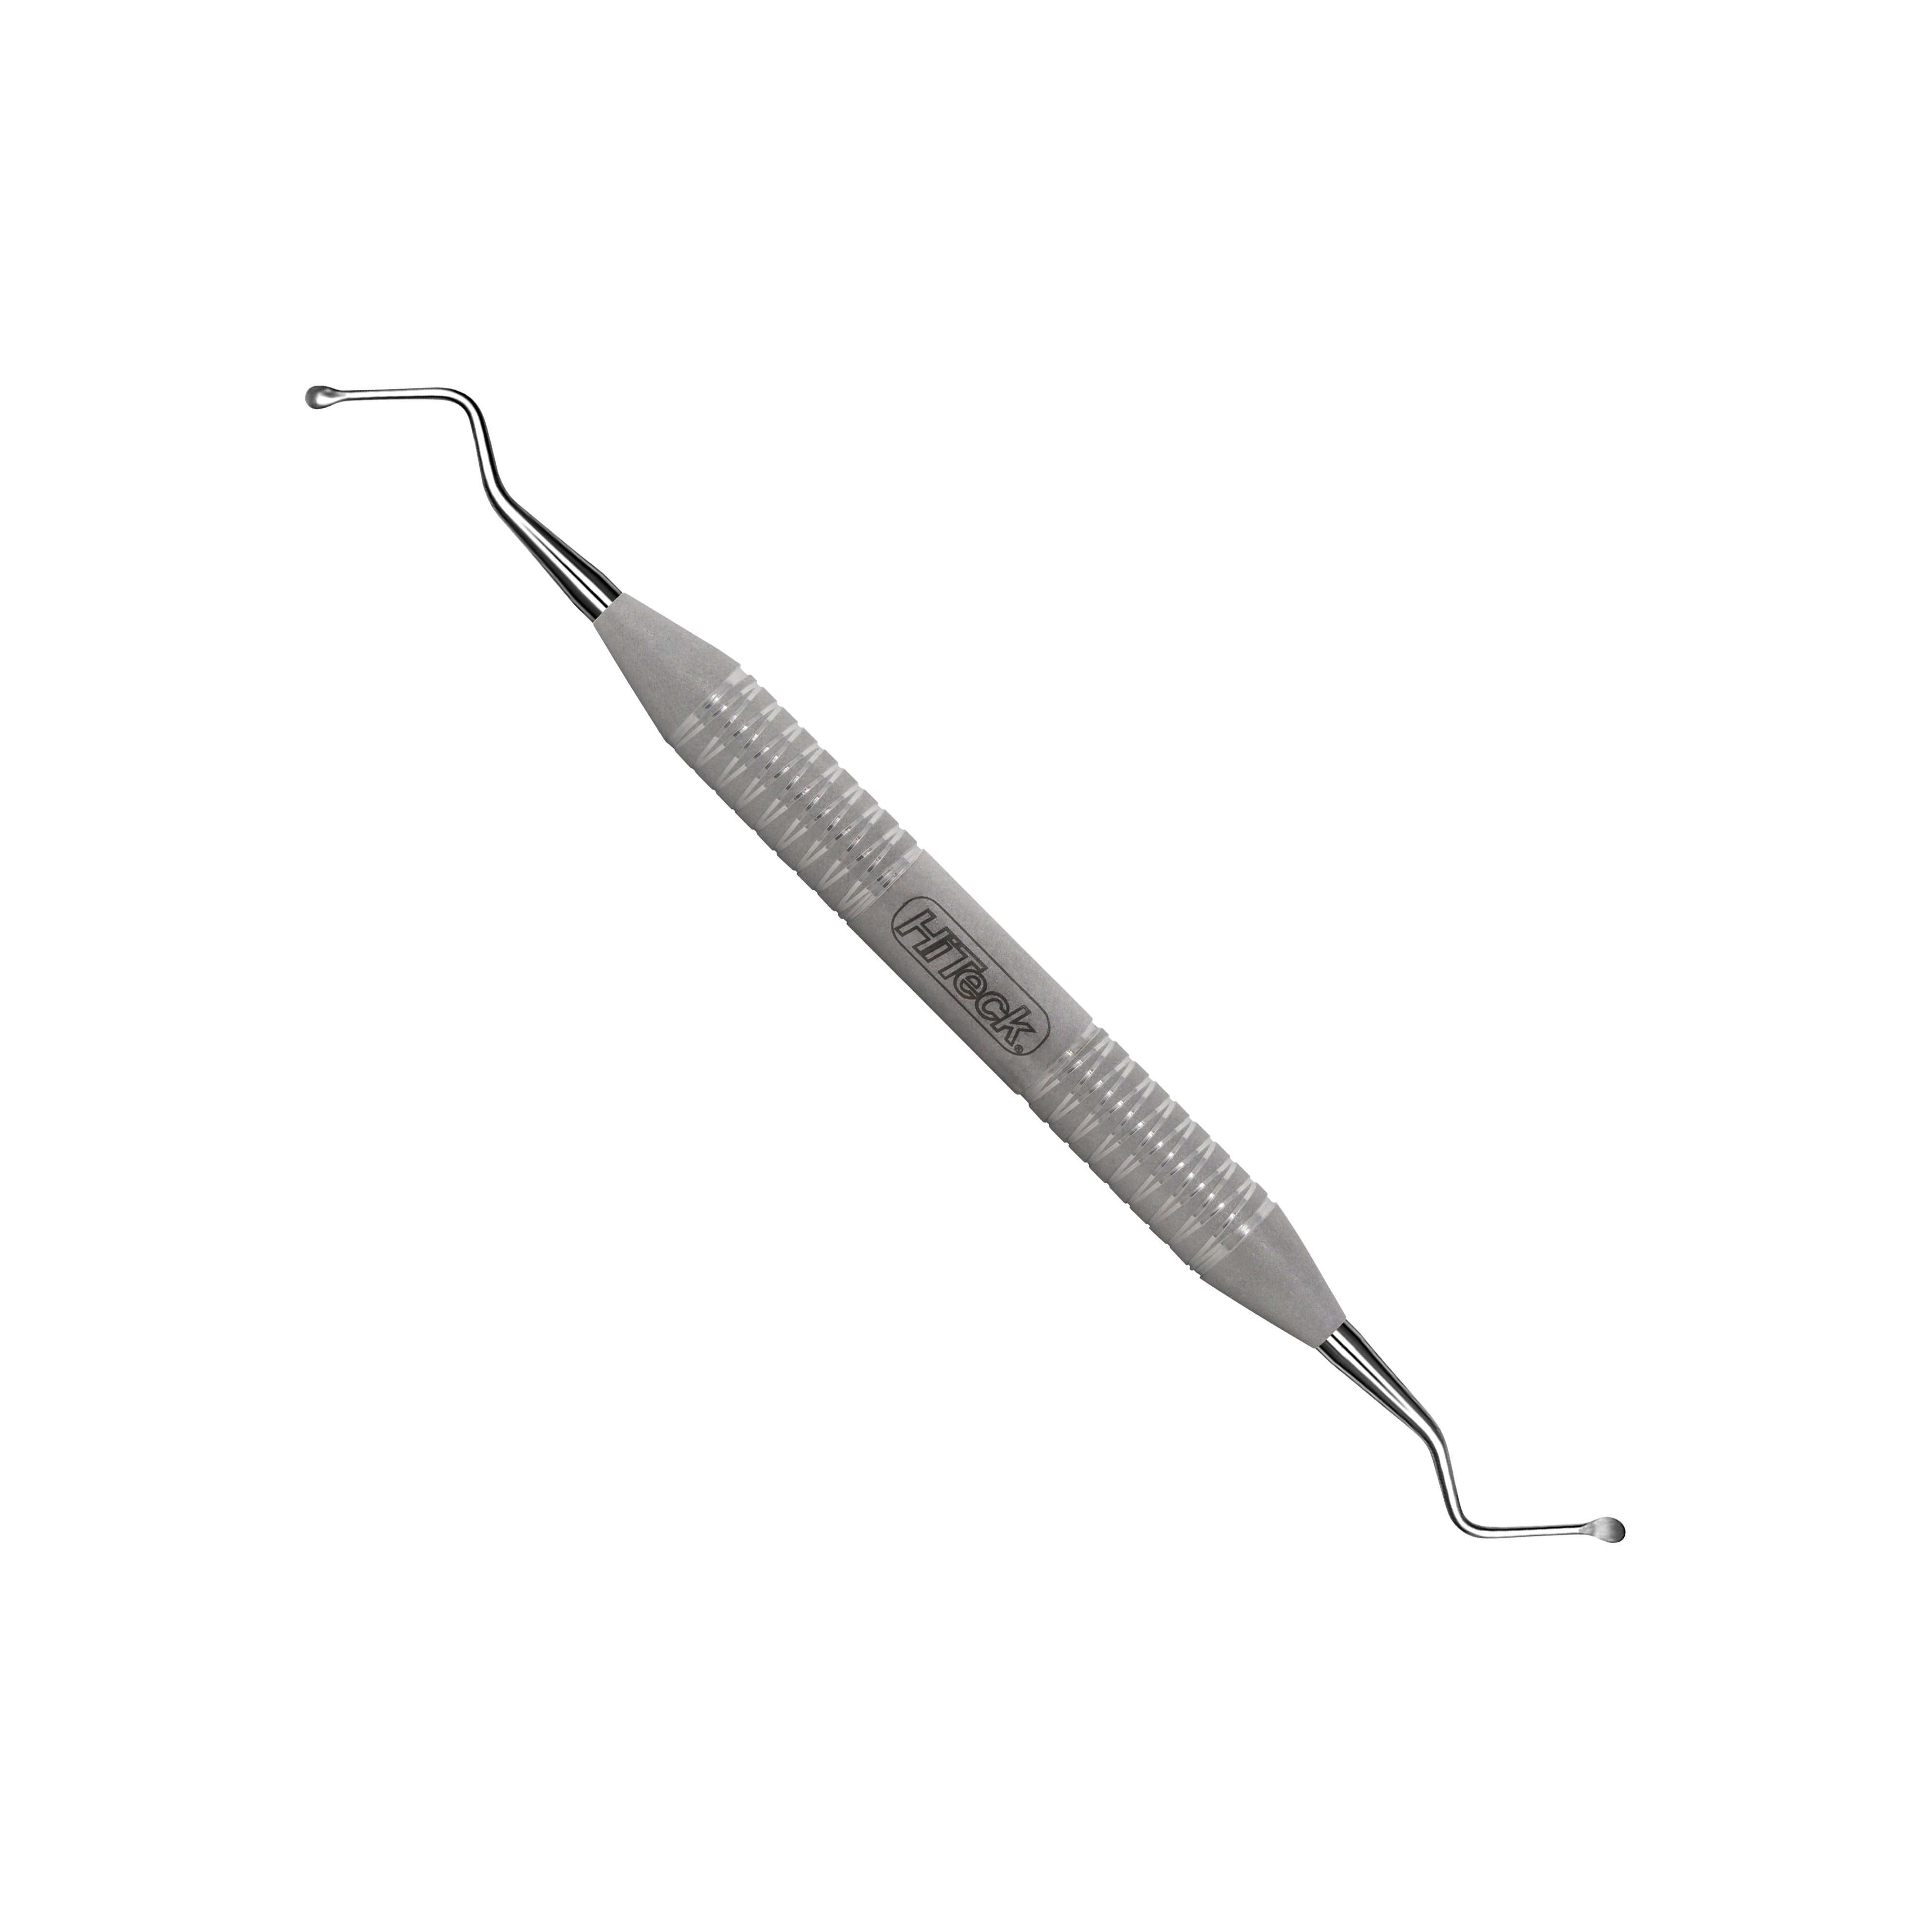 11 Miller Spoon Shape Surgical Curette, 3.6MM - HiTeck Medical Instruments